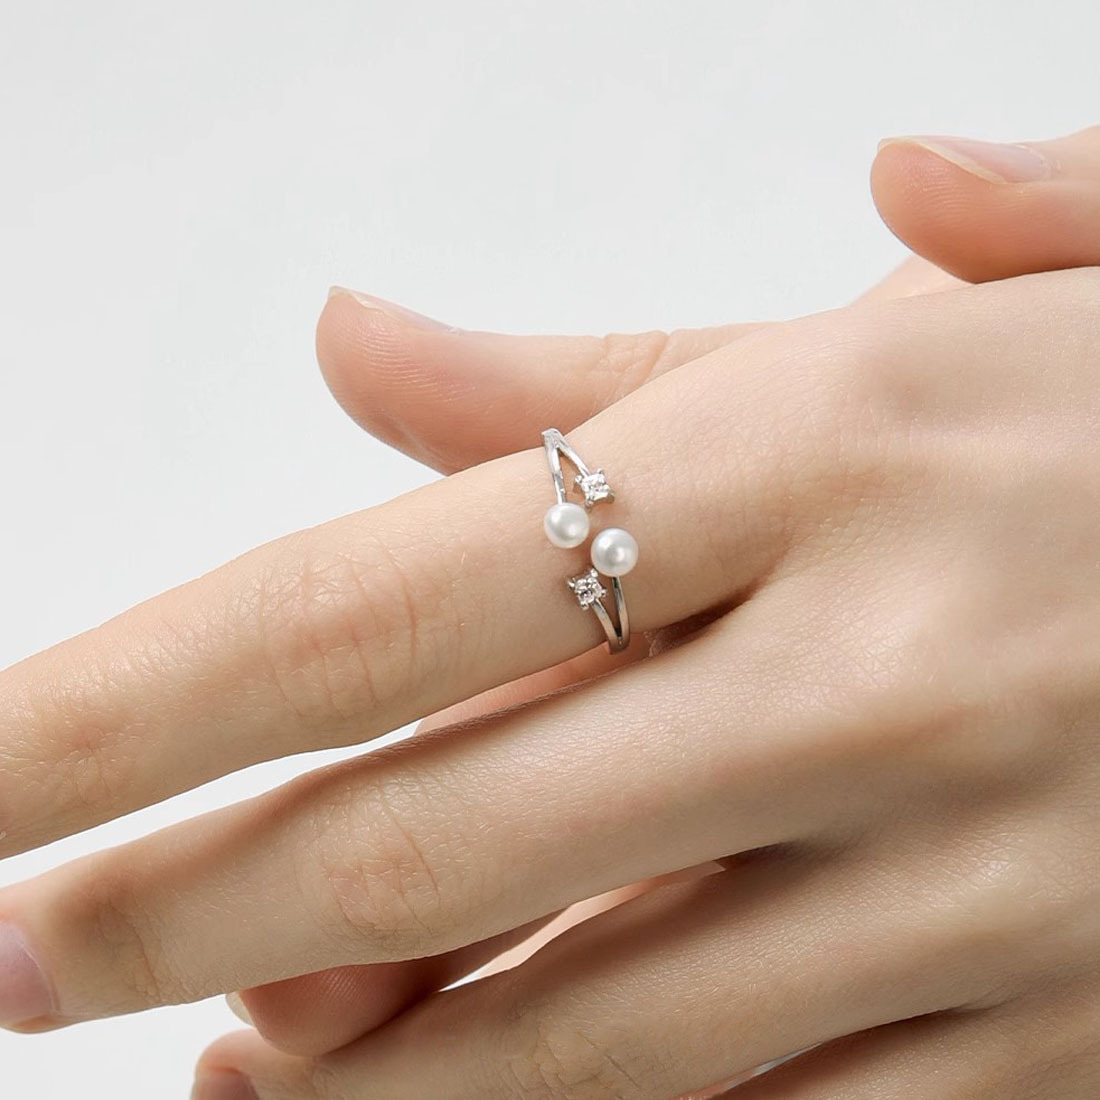 新款珍珠钻石戒指小众轻奢指环简约大气手饰品送女友情人节日礼物